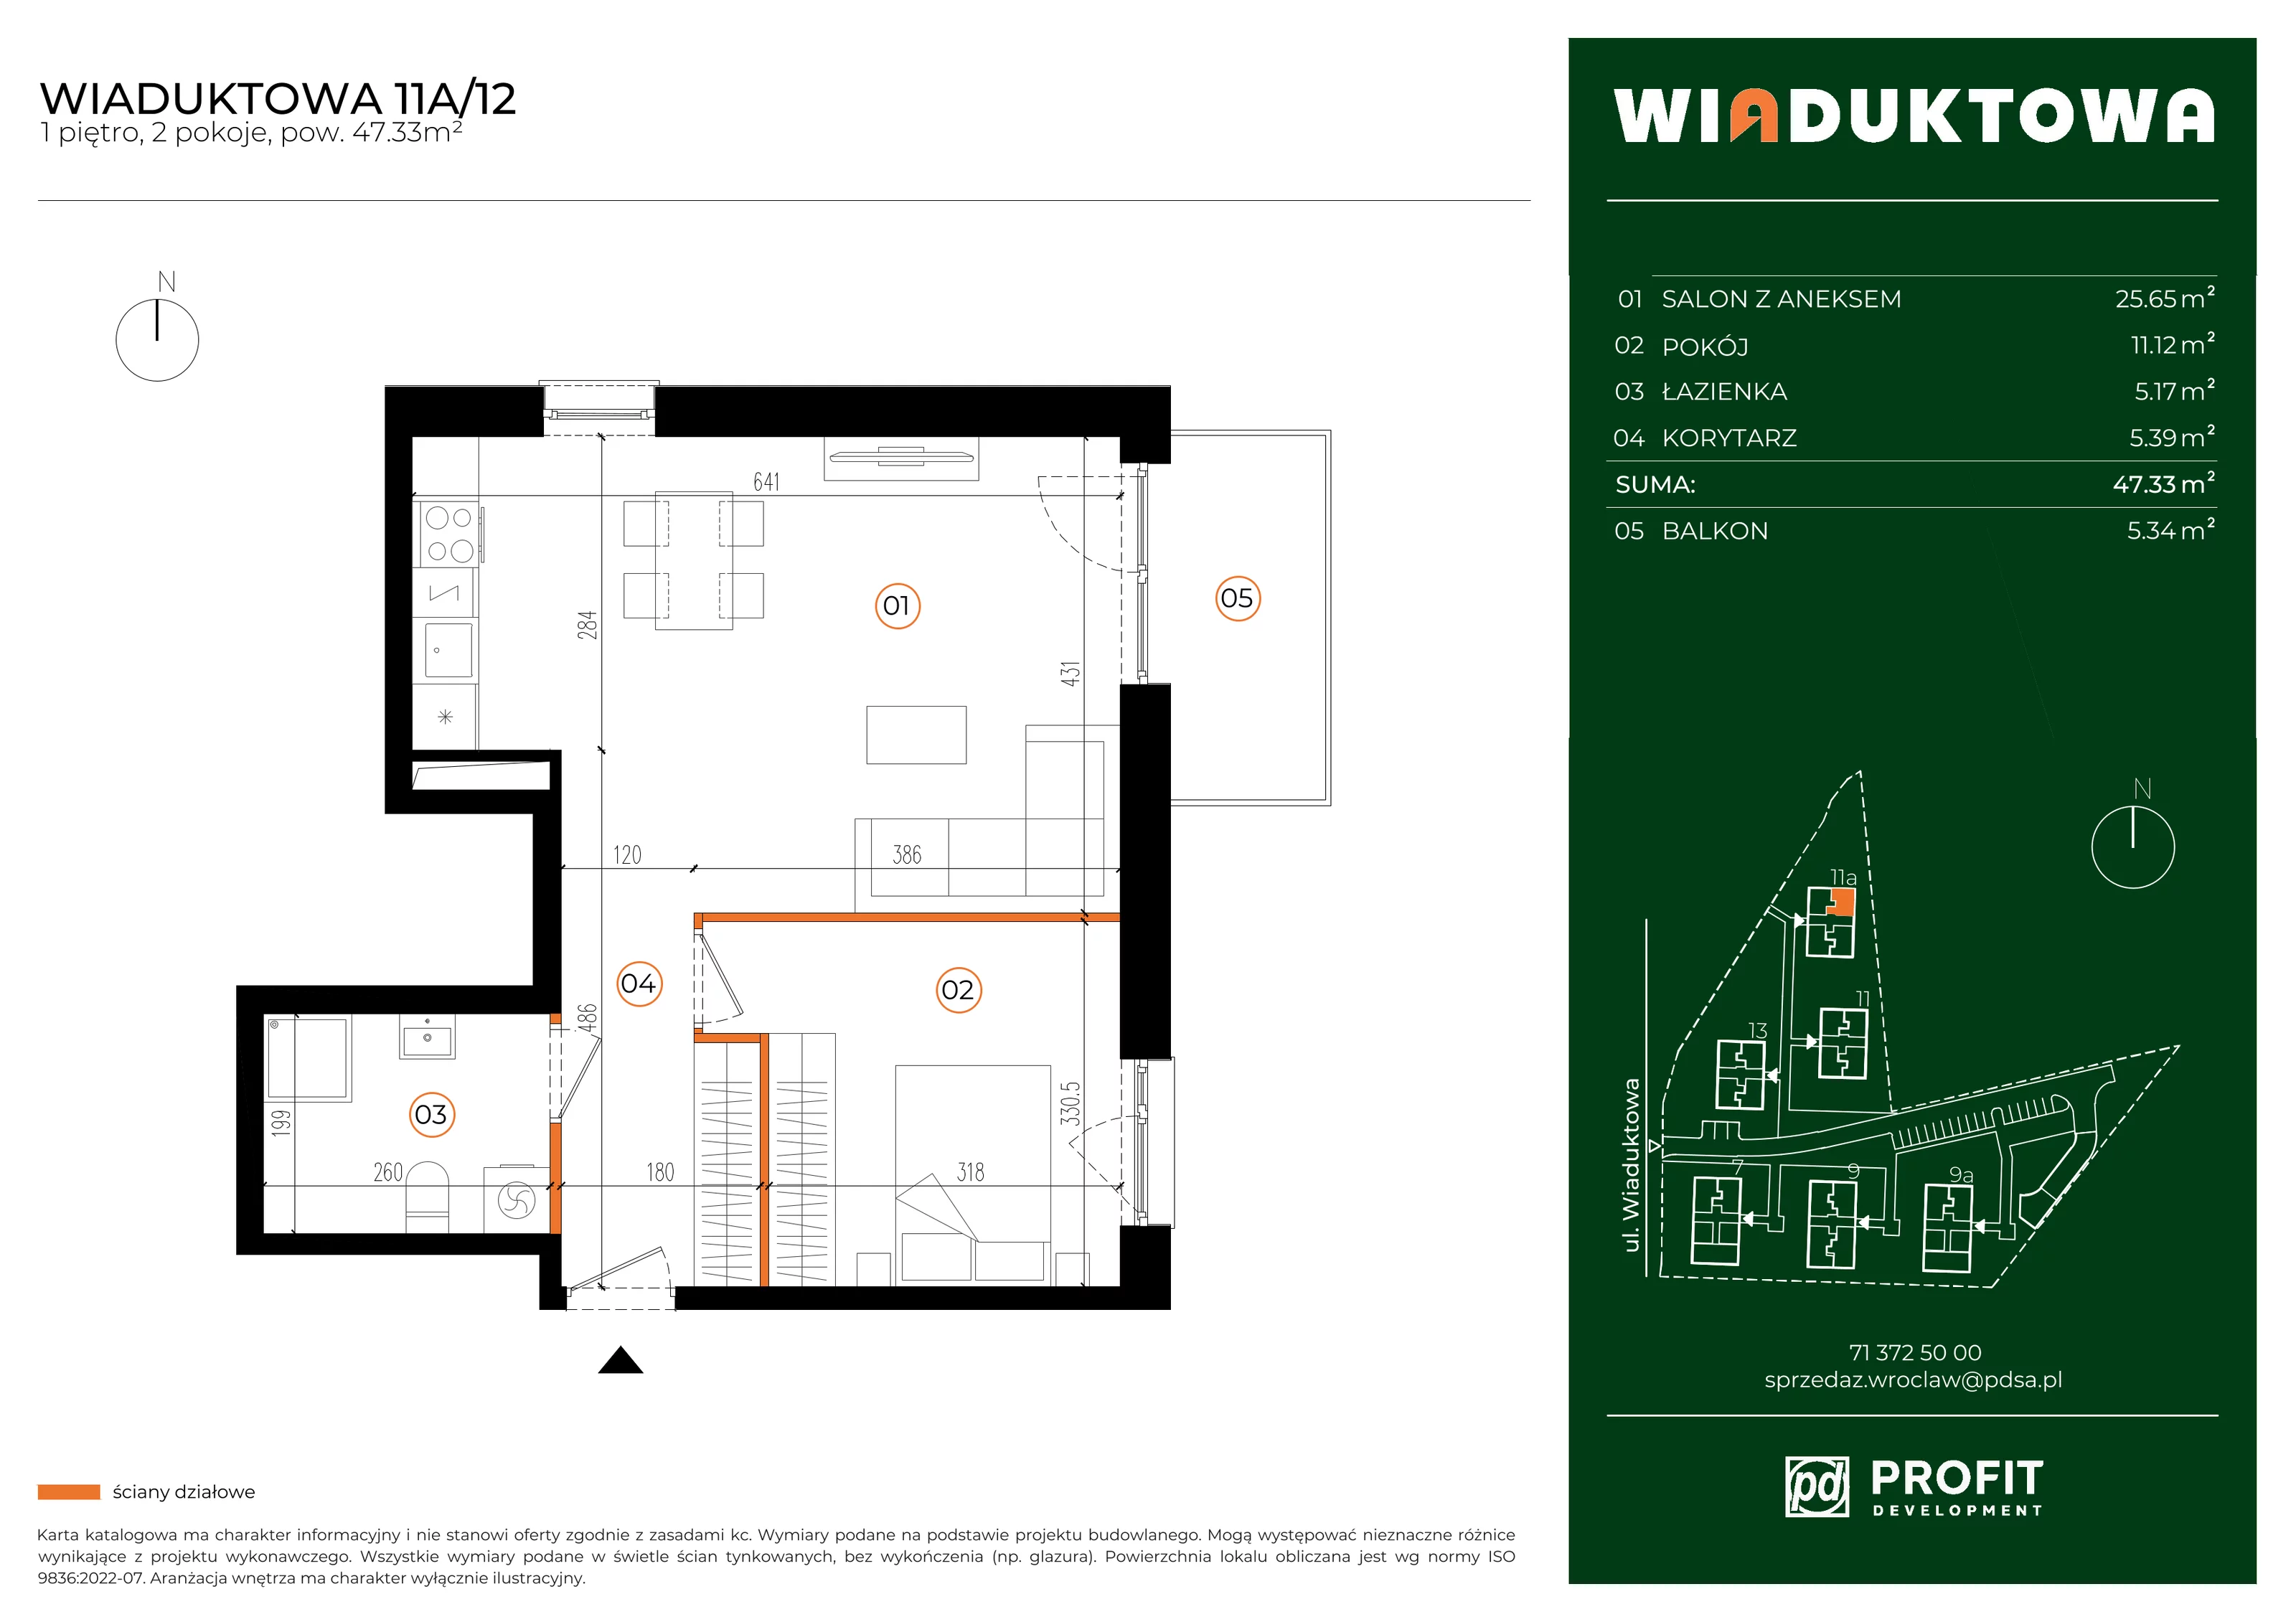 Mieszkanie 47,33 m², piętro 1, oferta nr WI/11A/12, Wiaduktowa, Wrocław, Krzyki-Partynice, Krzyki, ul. Wiaduktowa